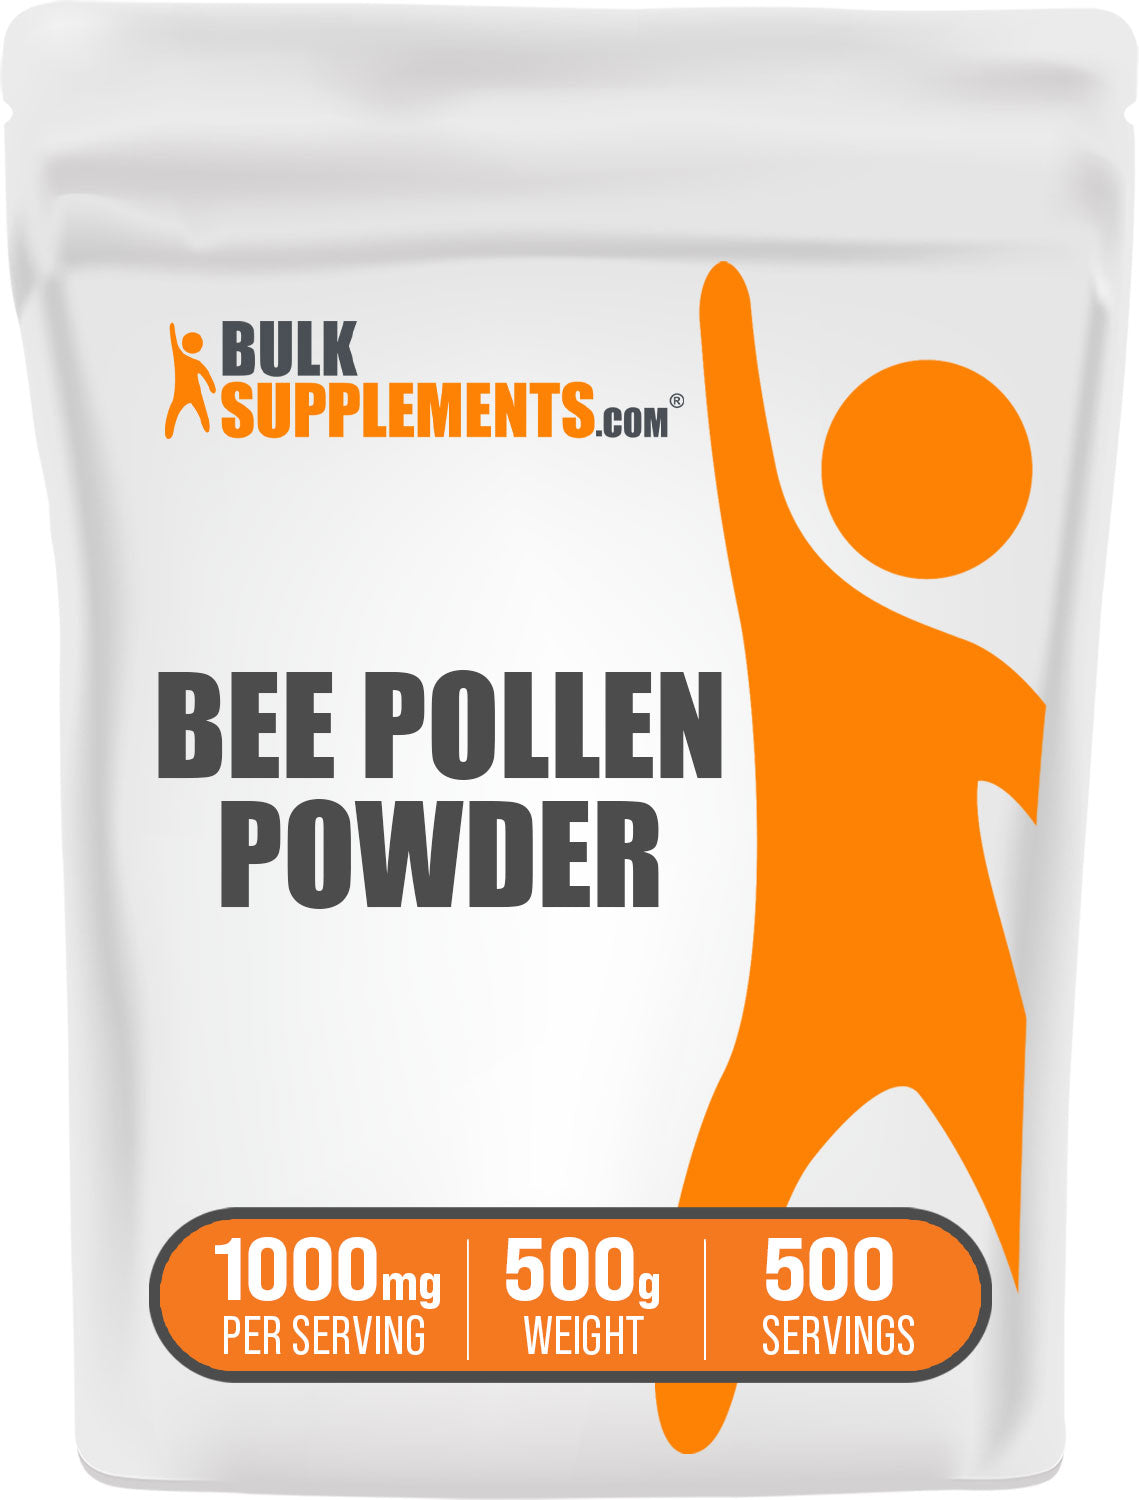 BulkSupplements.com Bee Pollen Powder 500g Bag